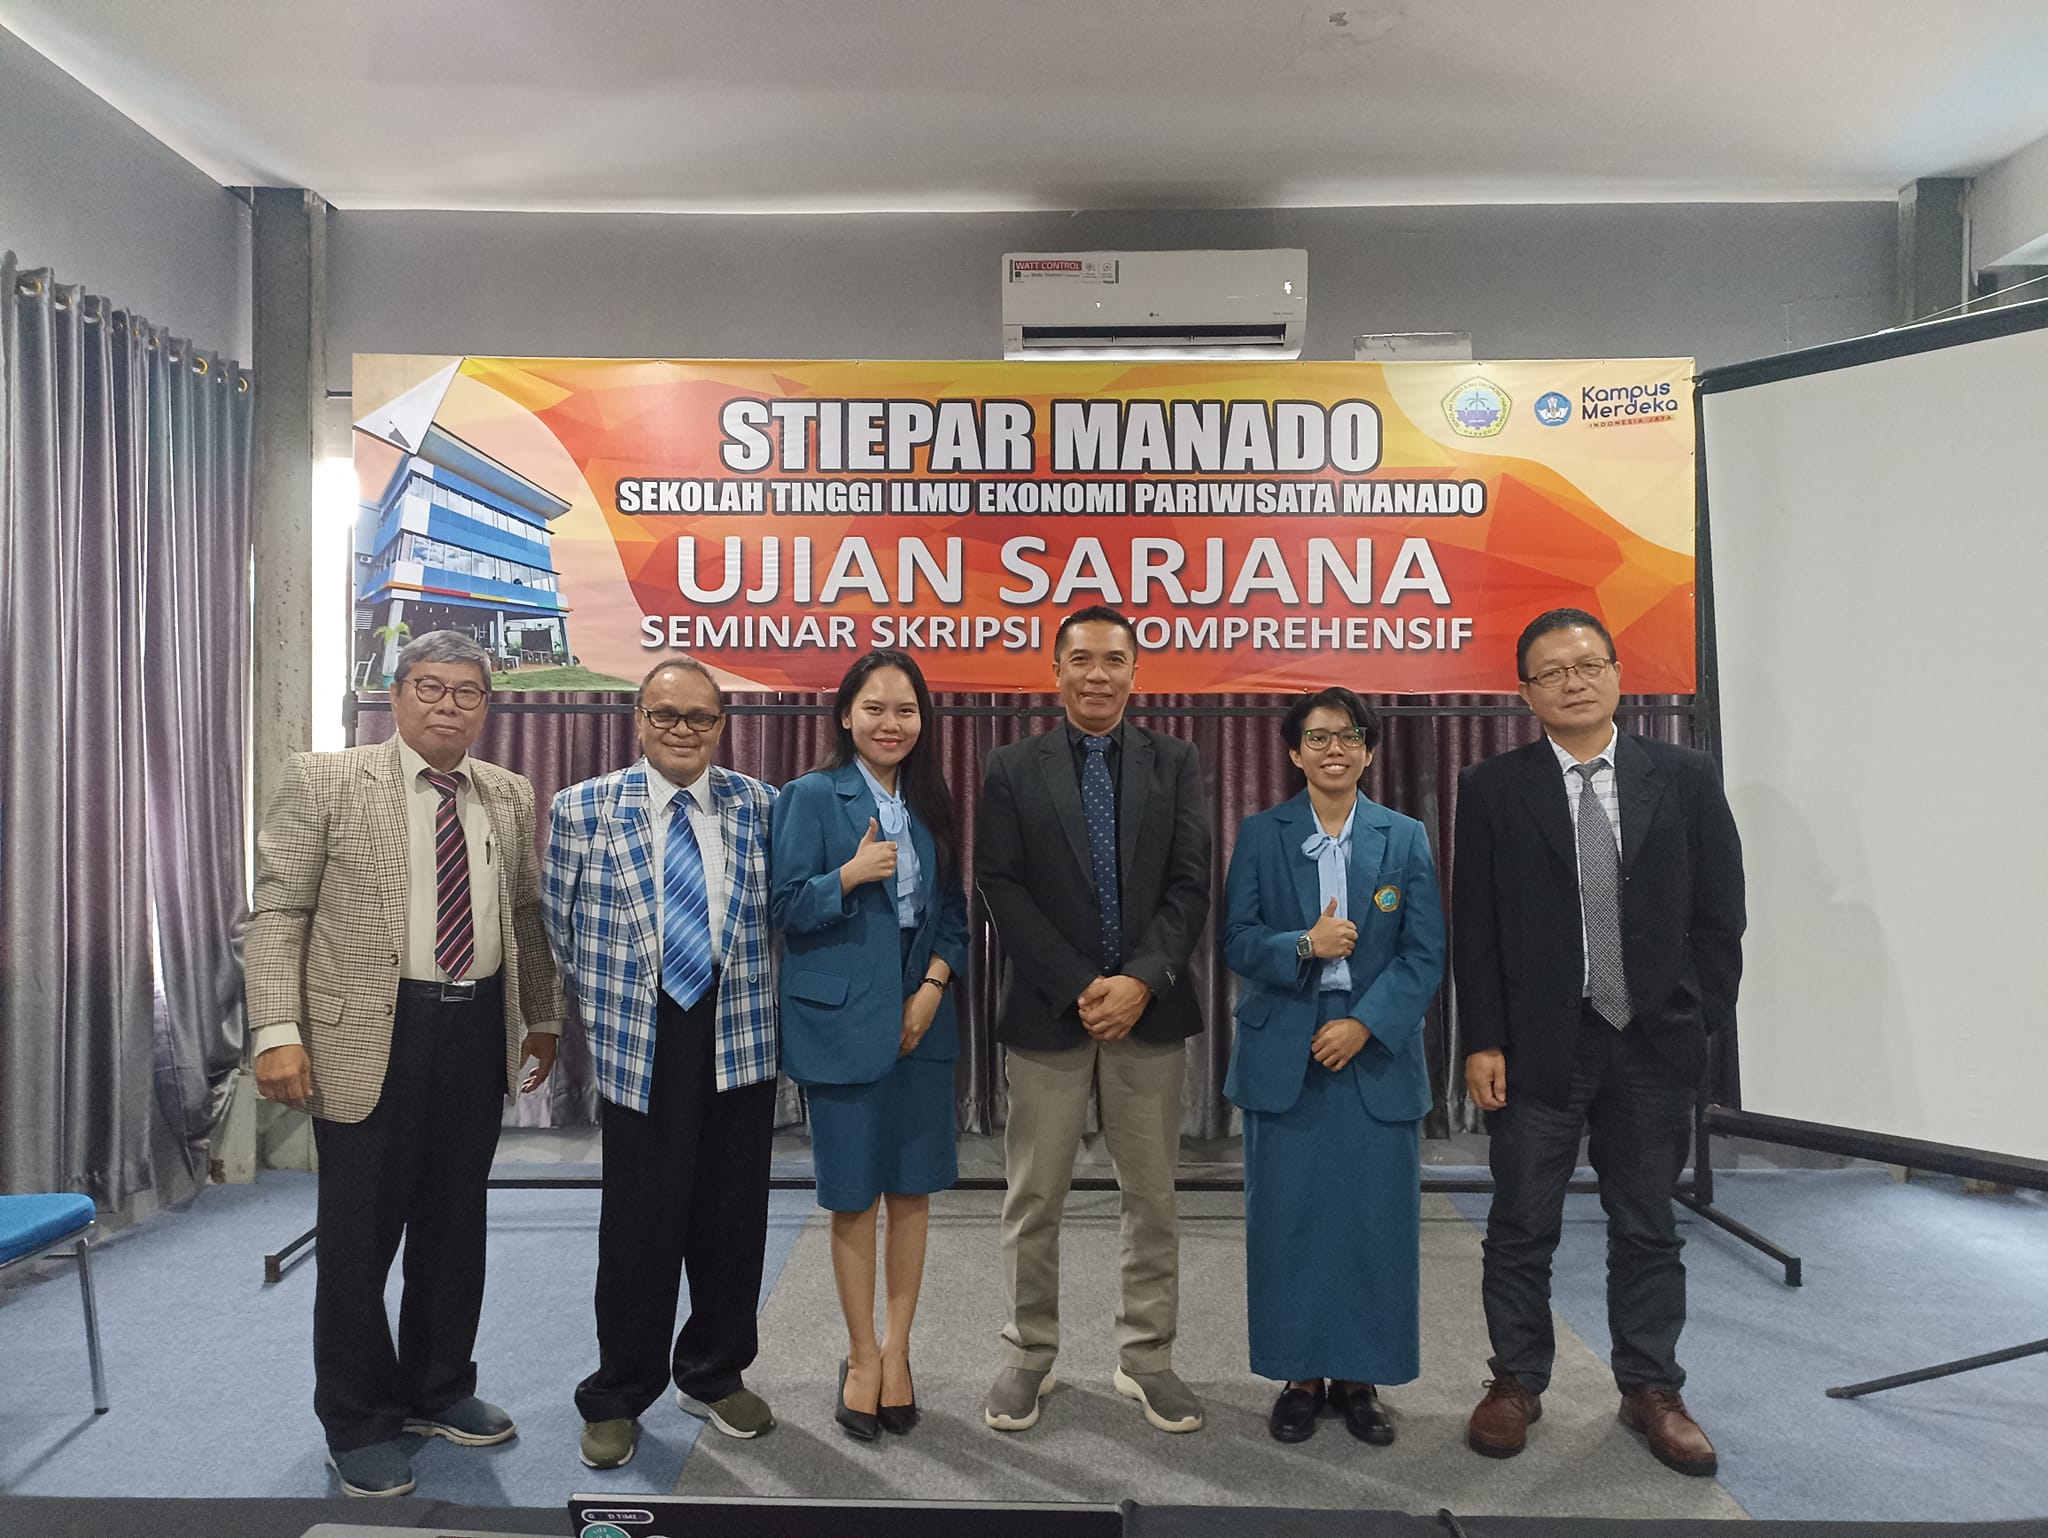 Seminar SKRIPSI dan KOMPRE perdana STIEPAR Manado di tahun 2024